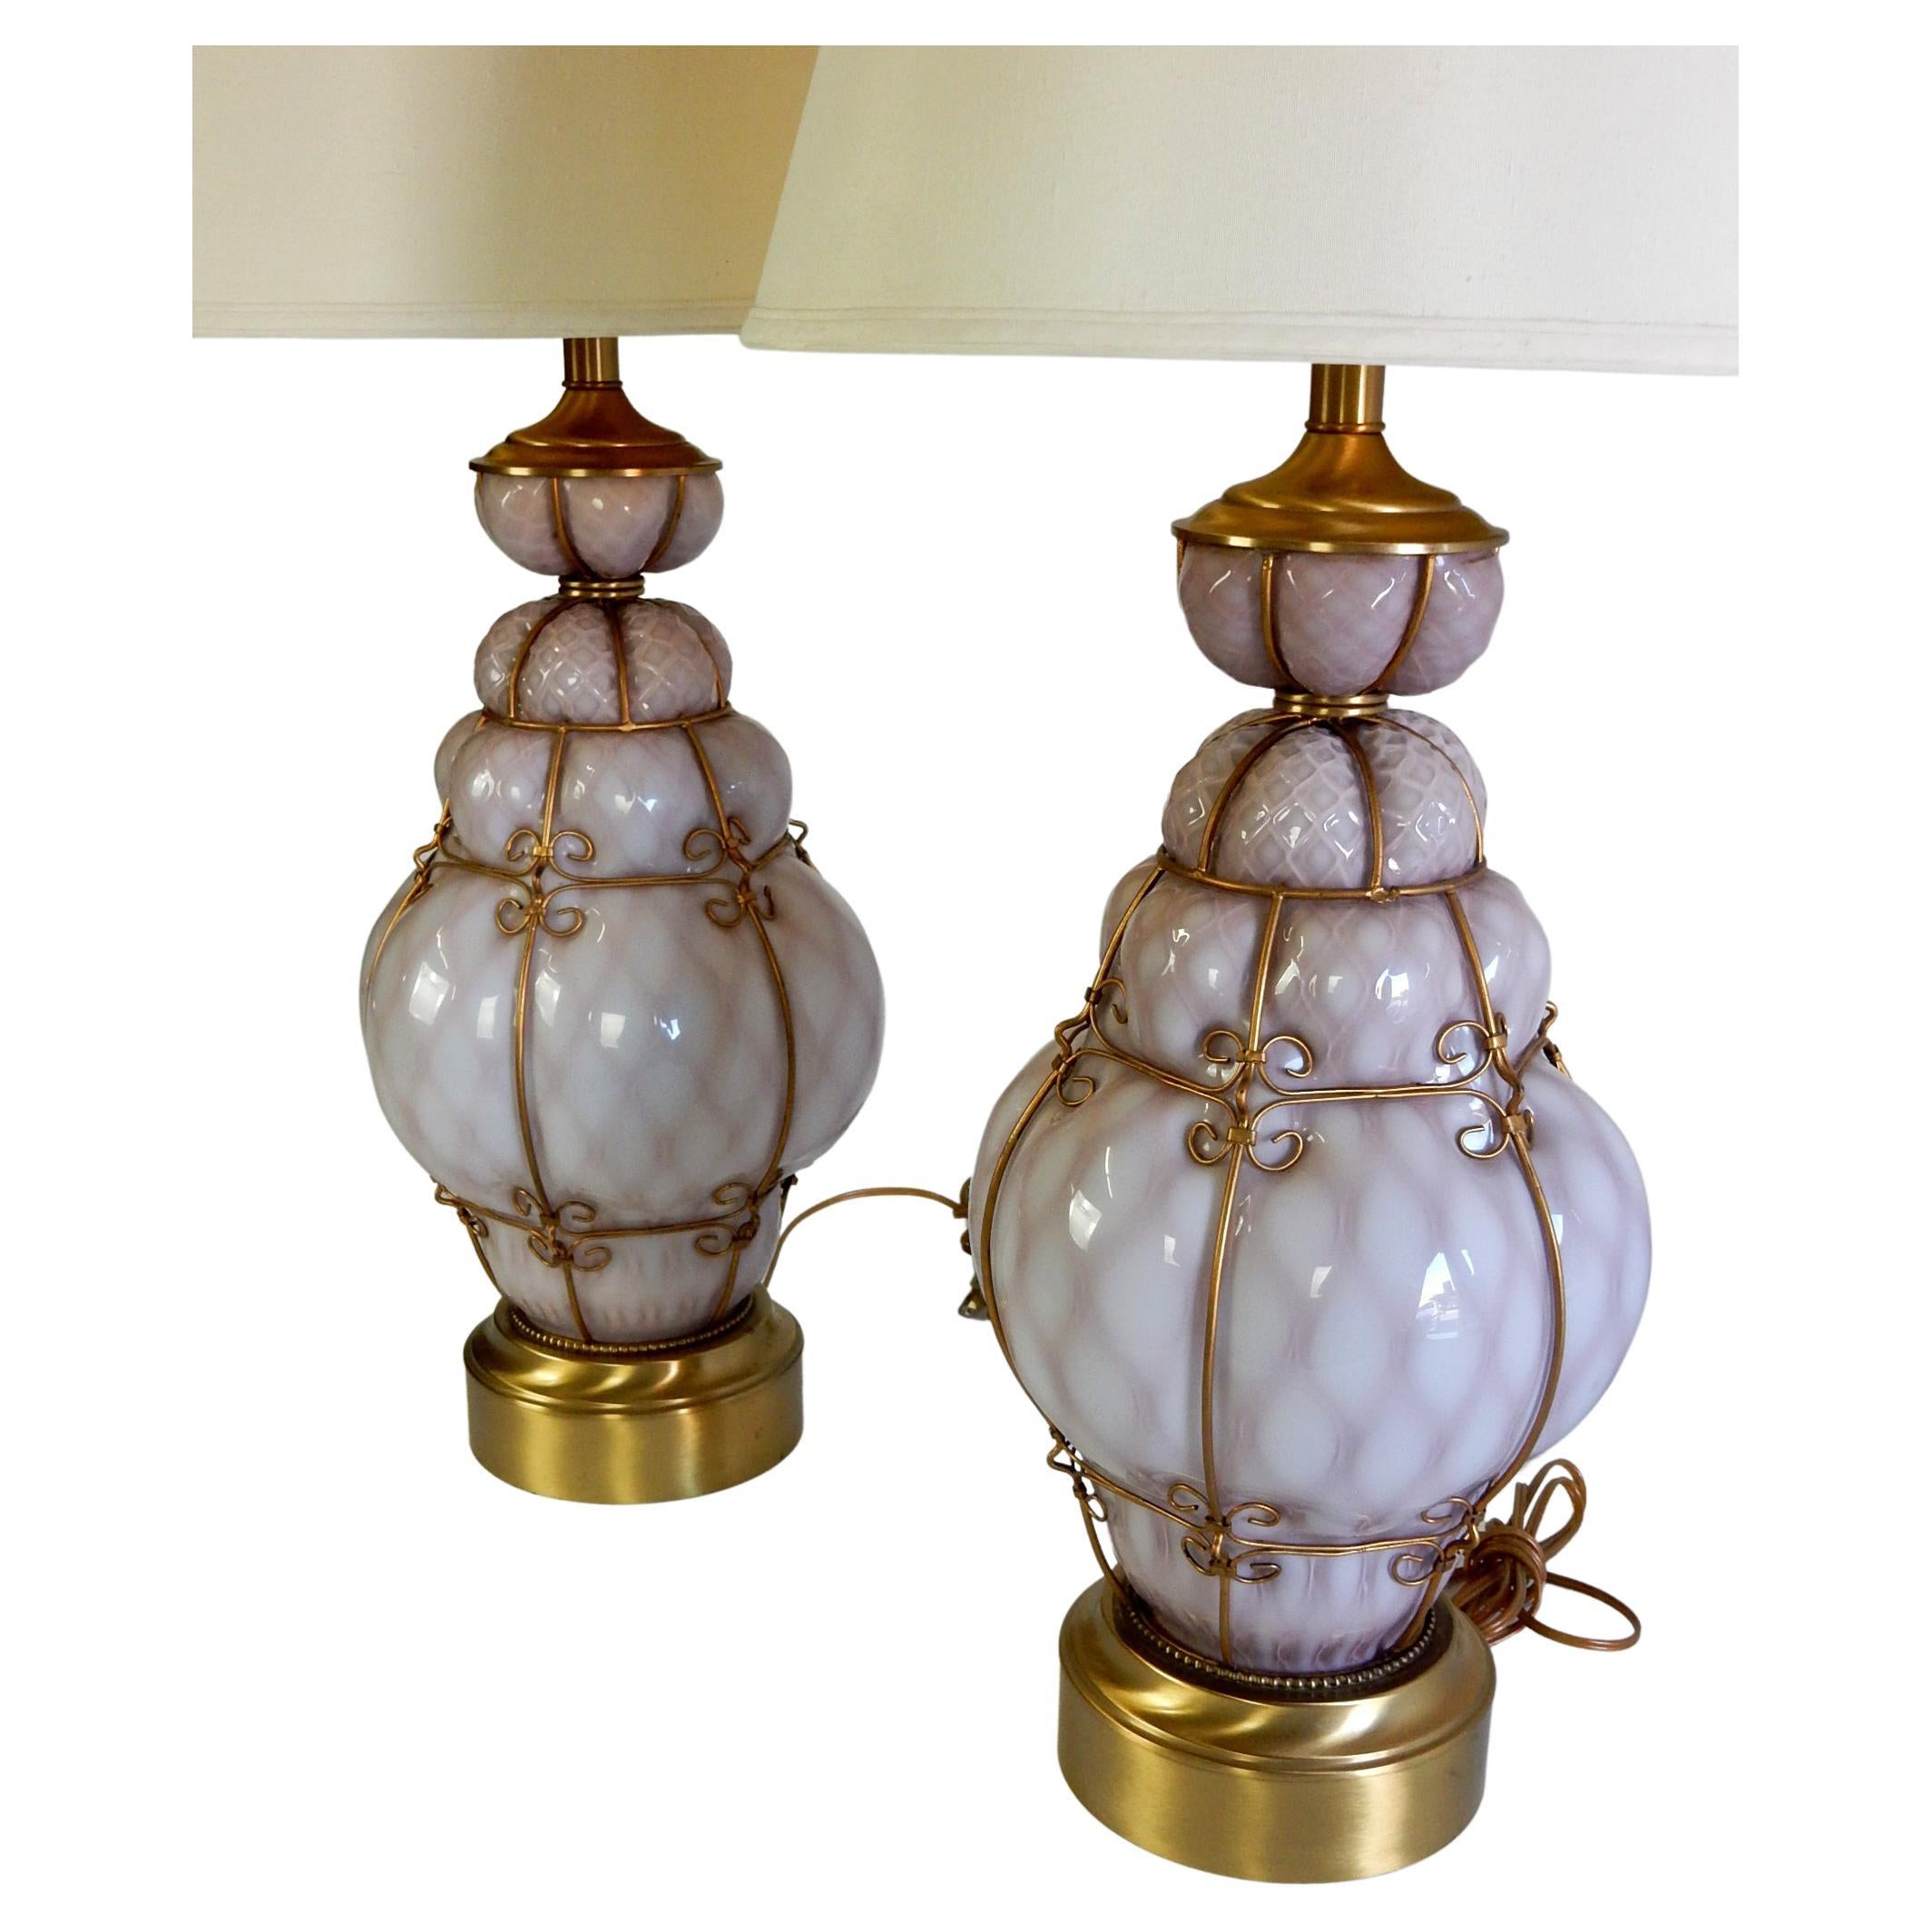 Großes Paar wunderschöner italienischer mundgeblasener Käfigkunstglas-Tischlampen
wird Seguso Italien zugeschrieben (nicht gekennzeichnet).
Violettfarbenes Glas mit goldenem Metallkäfig und Beschlägen.
Beide sind tadellos.